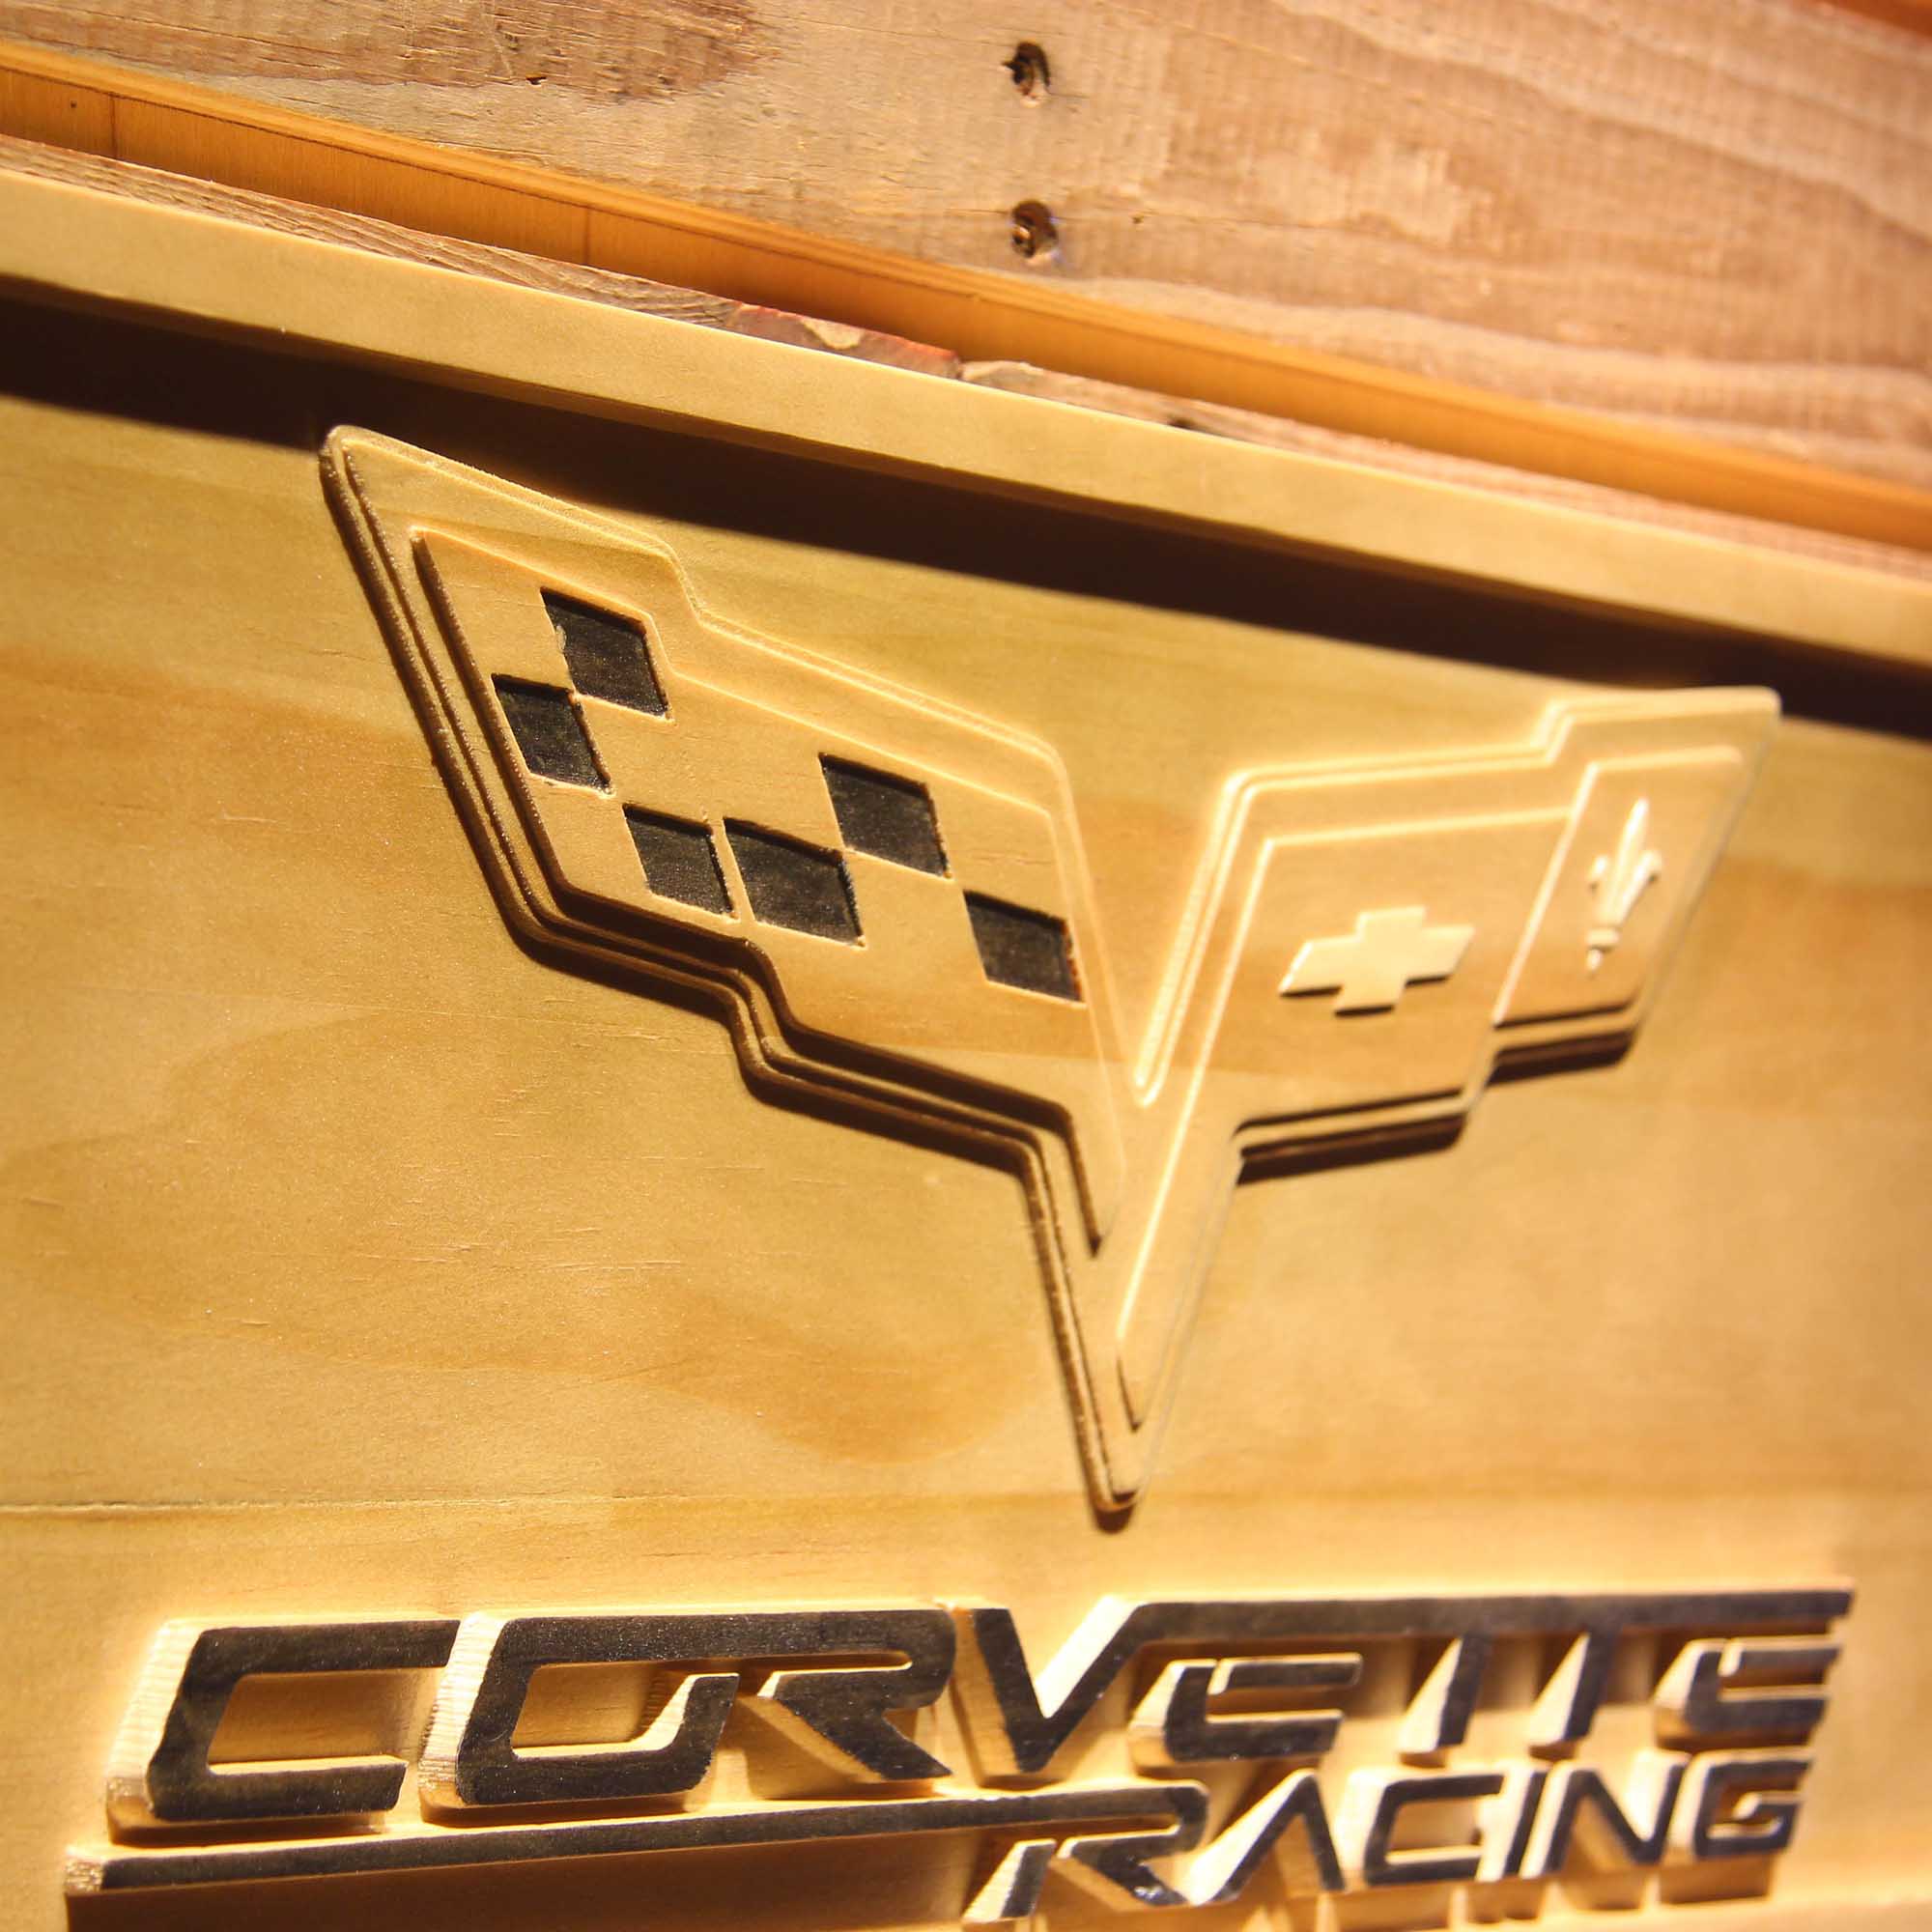 Corvette Racing 3D Wooden Engrave Sign